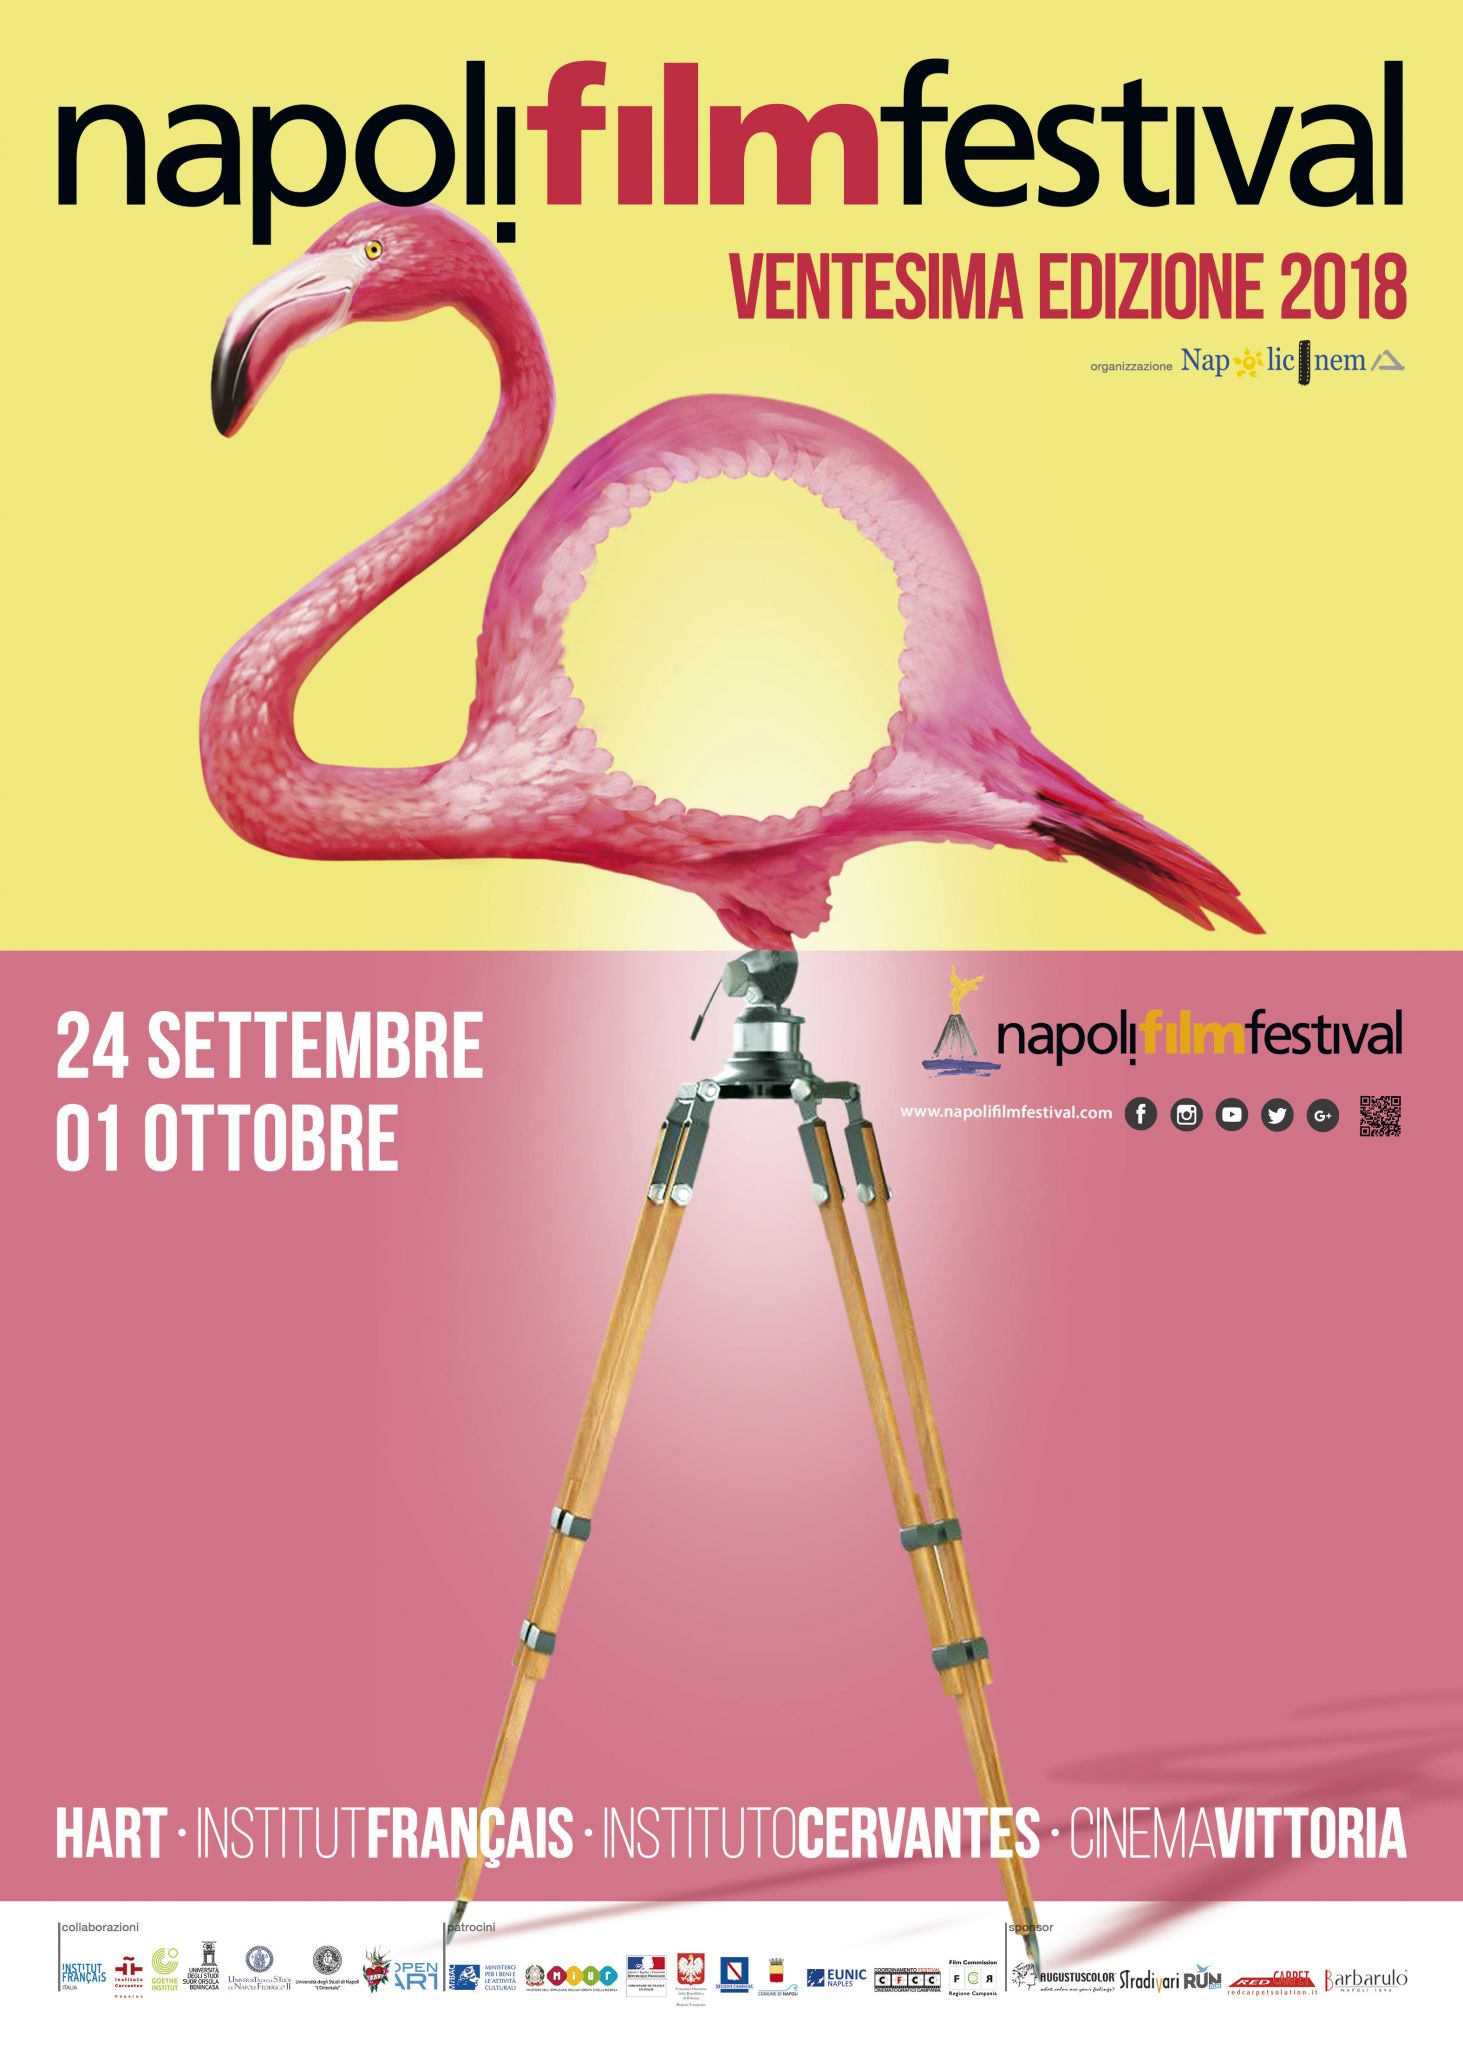 Ventesima edizione di Napoli Film Festival: dal 24 settembre al 1 ottobre con opere da tutto il mondo